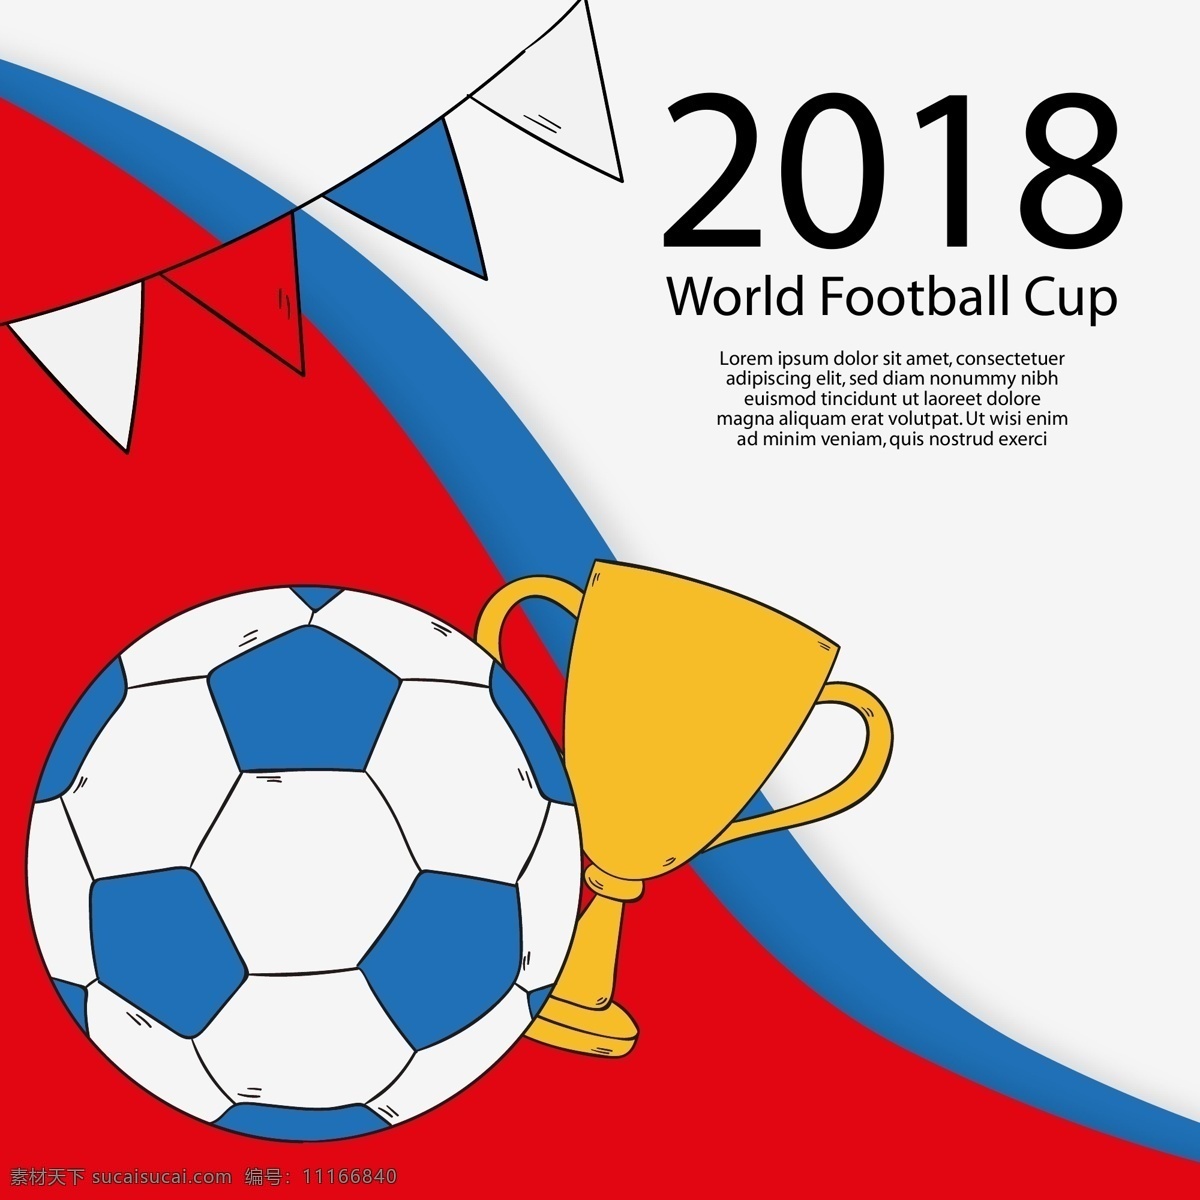 足球 世界杯 主题 2018 俄罗斯世界杯 足球世界杯 奖杯 圆点 光线 球场 三角旗 文化艺术 体育运动